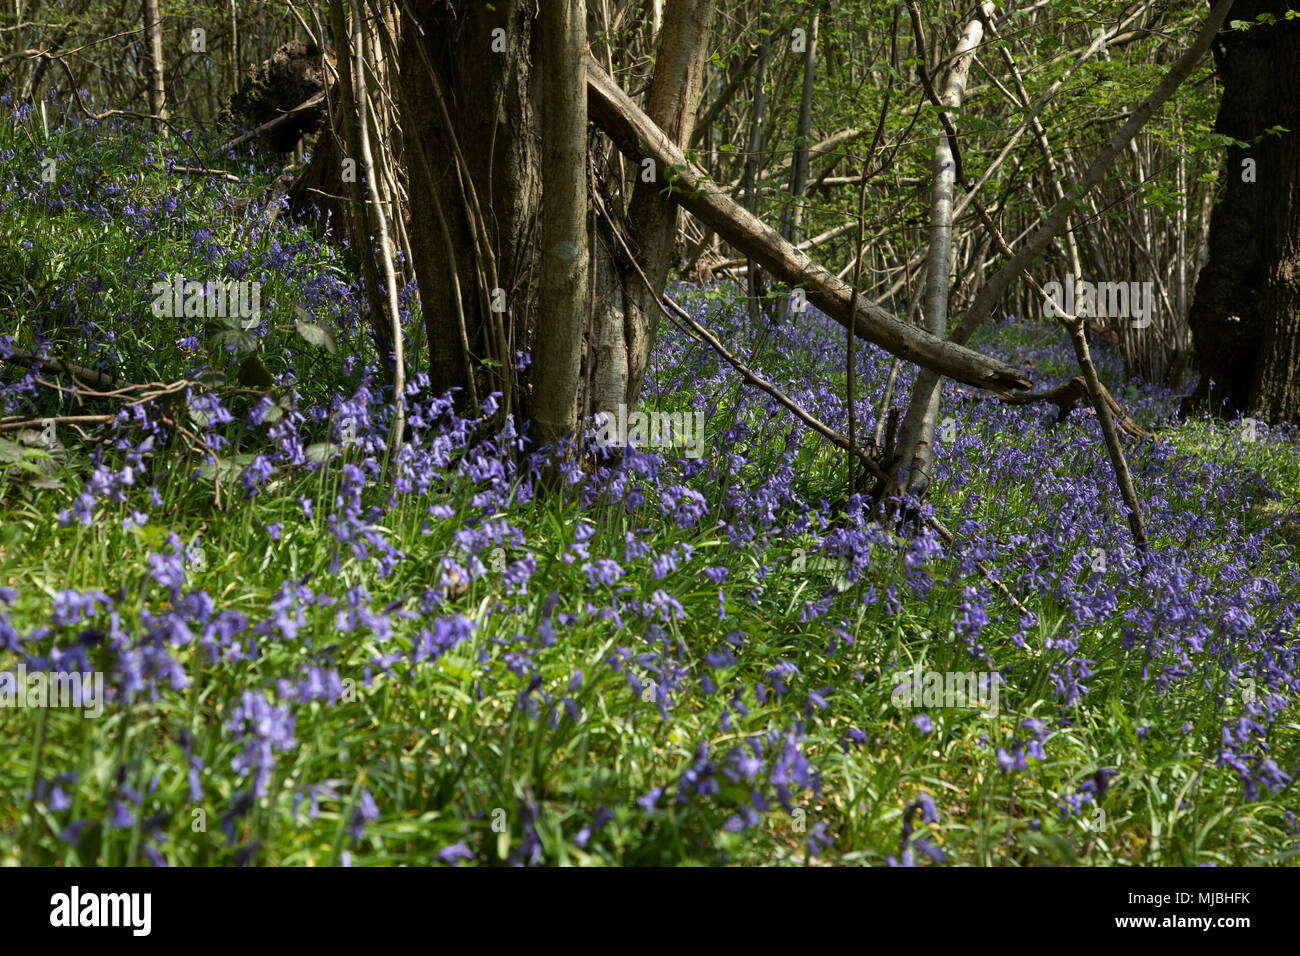 Las campánulas azules en la primavera del bosque cerca Underriver, Inglaterra, Reino Unido. Las campánulas azules o H. no scripta está especialmente relacionado con bosques milenarios, donde puede dominar el suelo de bosques para la producción de alfombras de flores de color azul-violeta en bluebell woods, pero también ocurre en los hábitats más abiertos en las regiones occidentales. Está protegido en virtud de la legislación del Reino Unido. Foto de stock